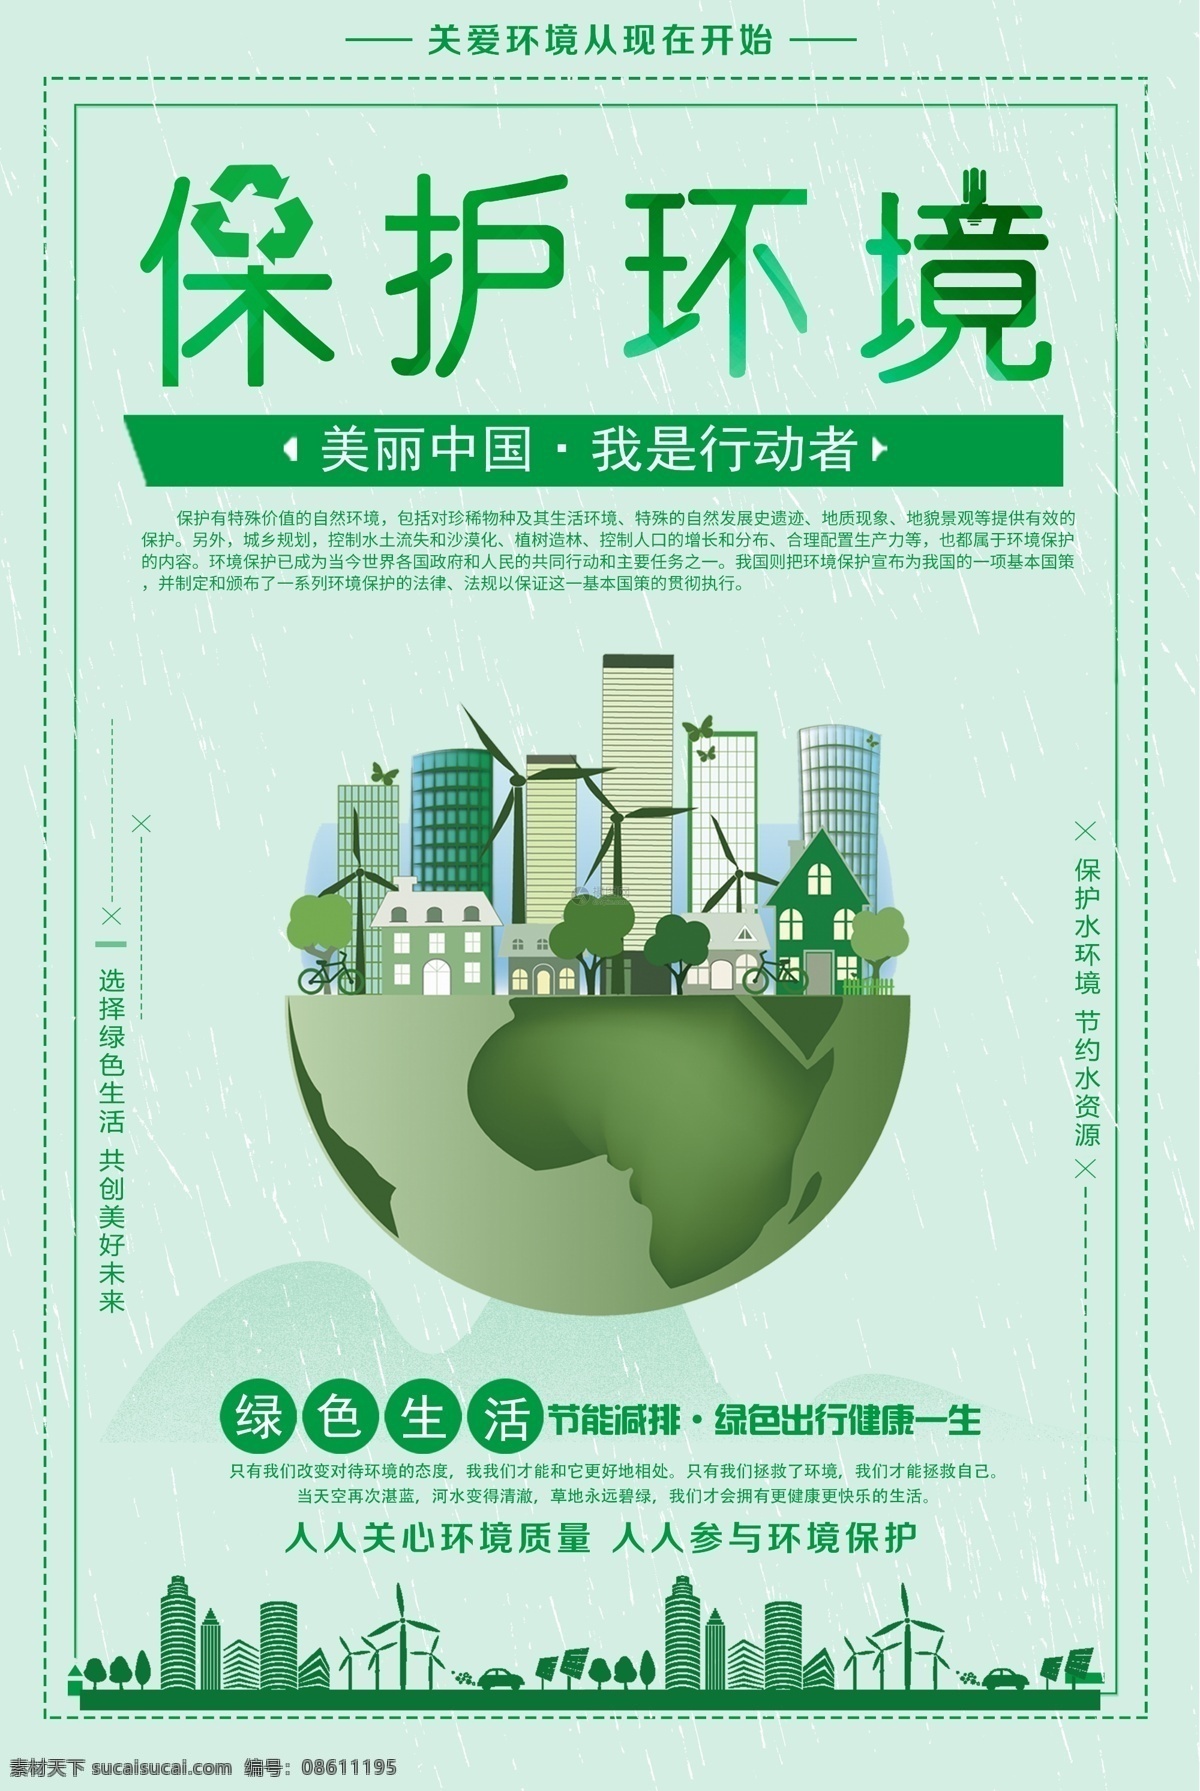 绿色 保护 环境 公益 海报 环保 保护环境 公益海报 绿色环保